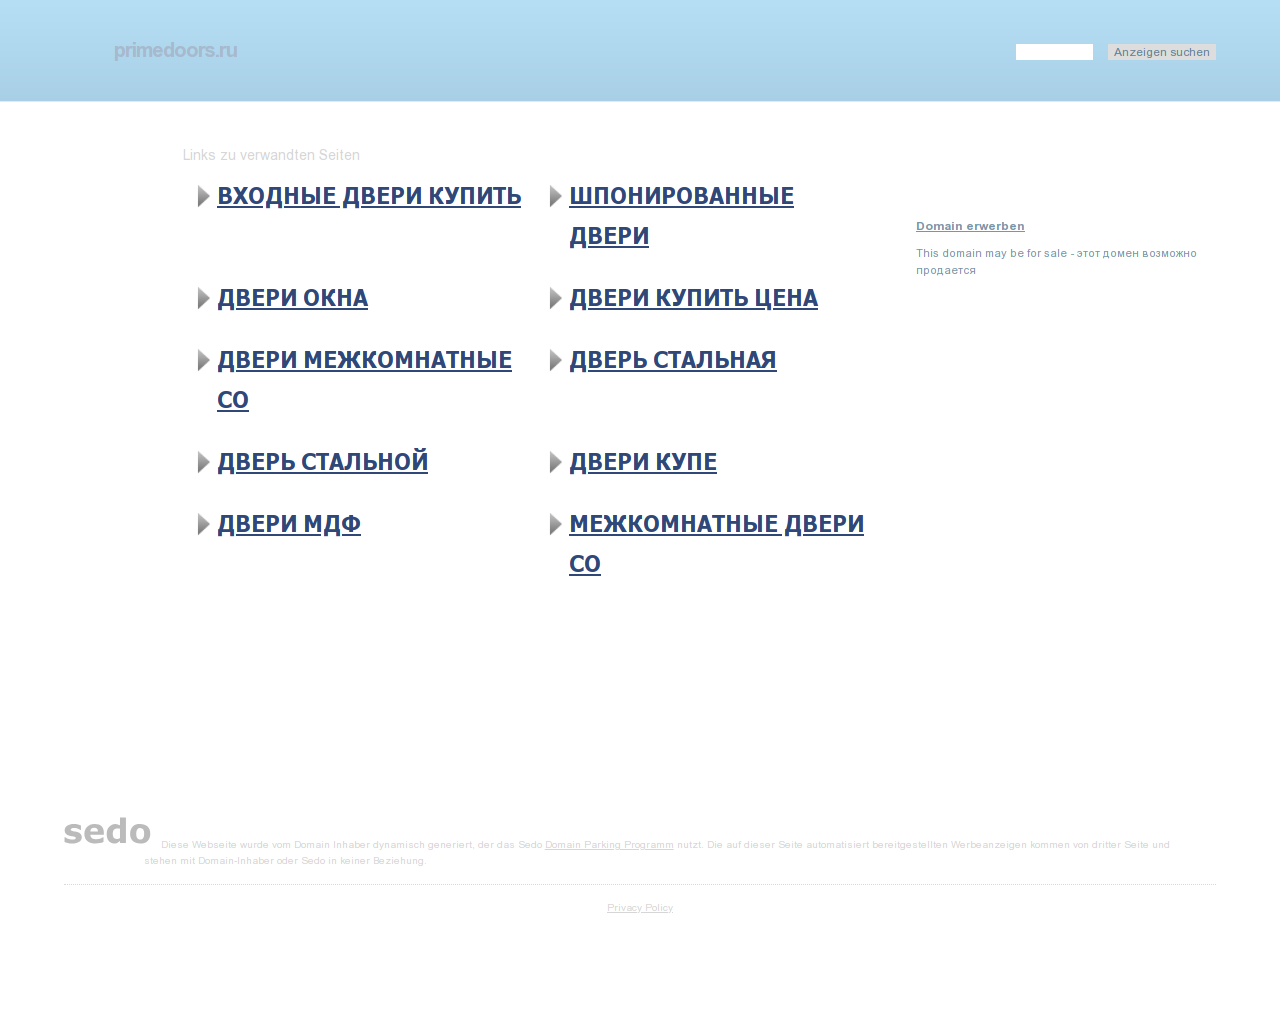 Изображение сайта primedoors.ru в разрешении 1280x1024